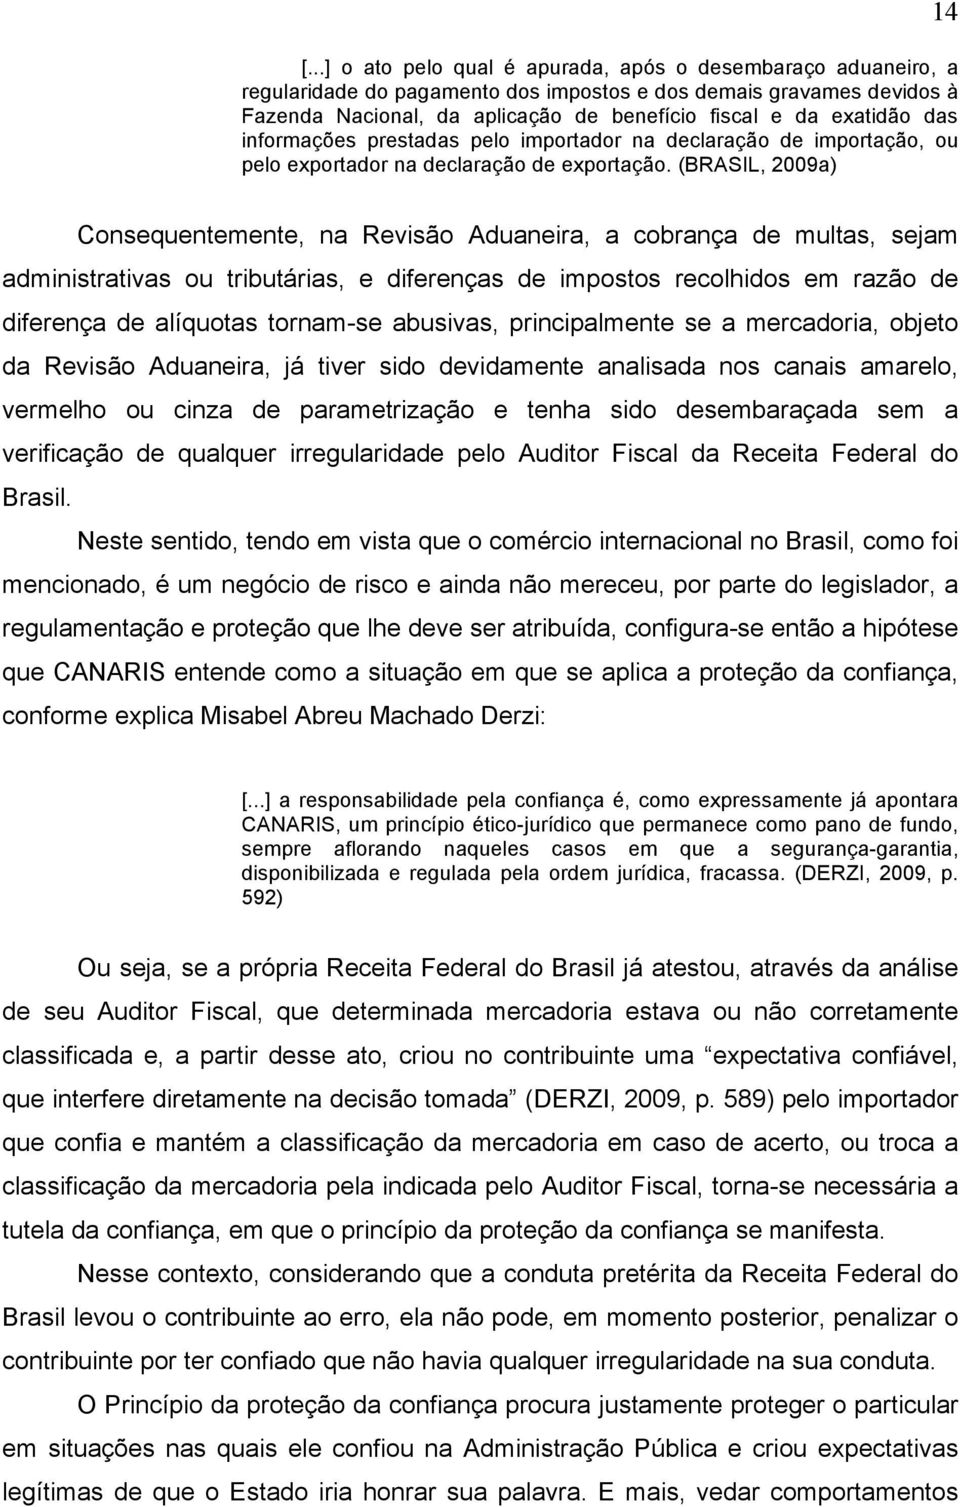 (BRASIL, 2009a) 14 Consequentemente, na Revisão Aduaneira, a cobrança de multas, sejam administrativas ou tributárias, e diferenças de impostos recolhidos em razão de diferença de alíquotas tornam-se